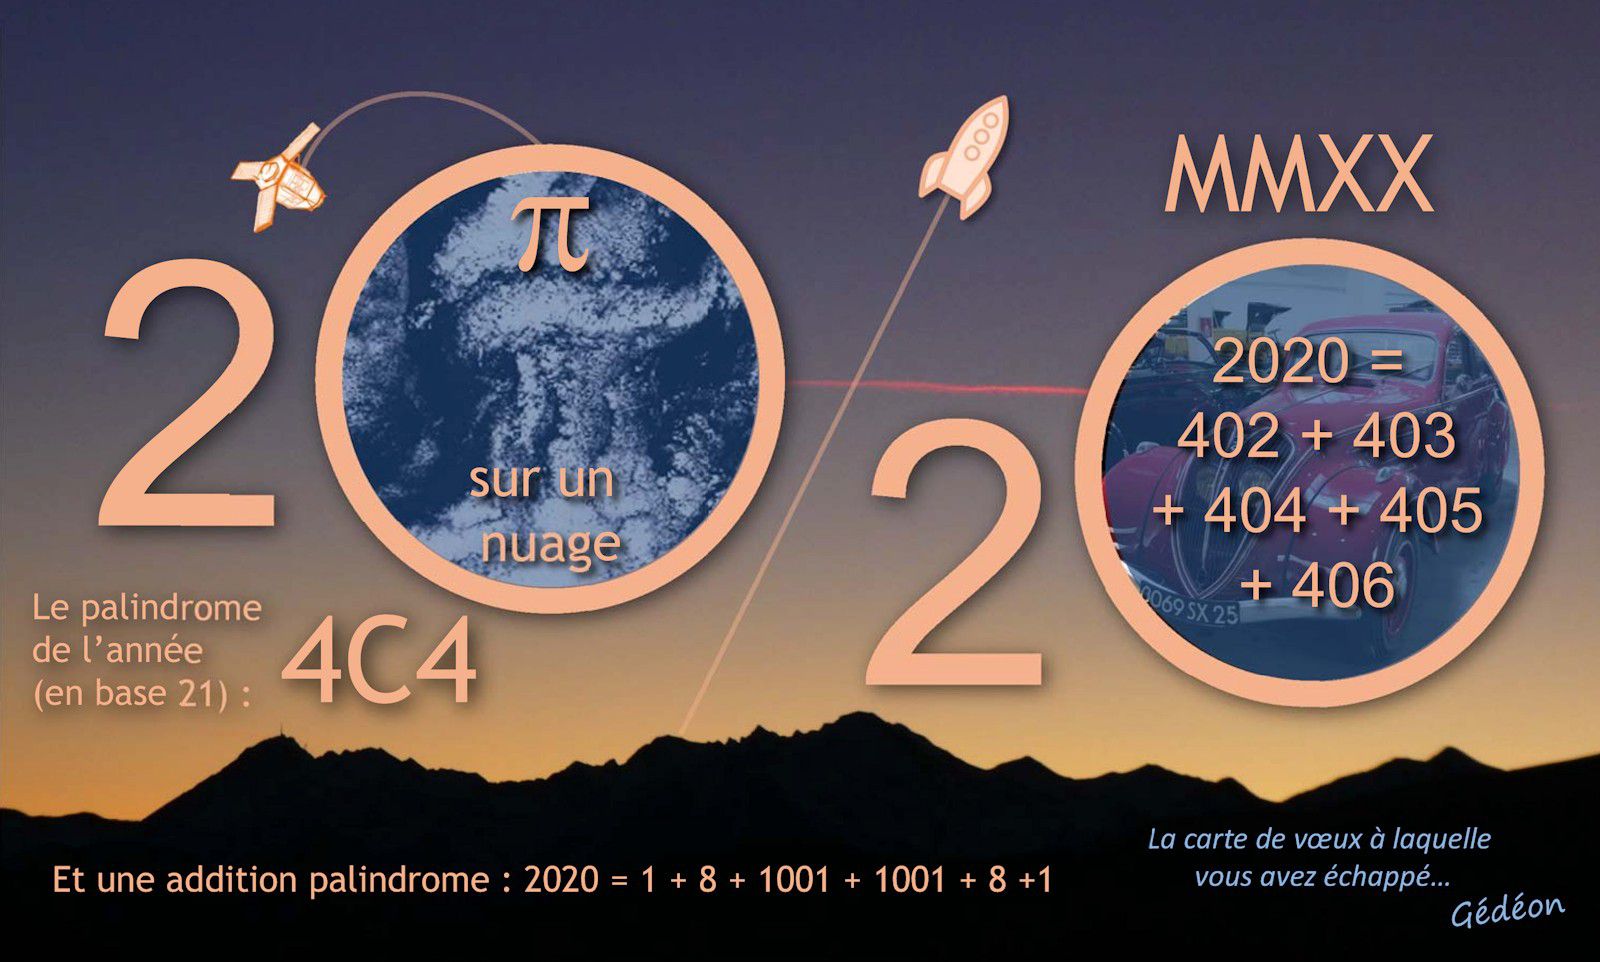 Carte de voeux - 2020 - Season's greetings - Bonne année - curiosités mathématiques - amis des maths - mathematics - nombre autodescriptif - palindrome